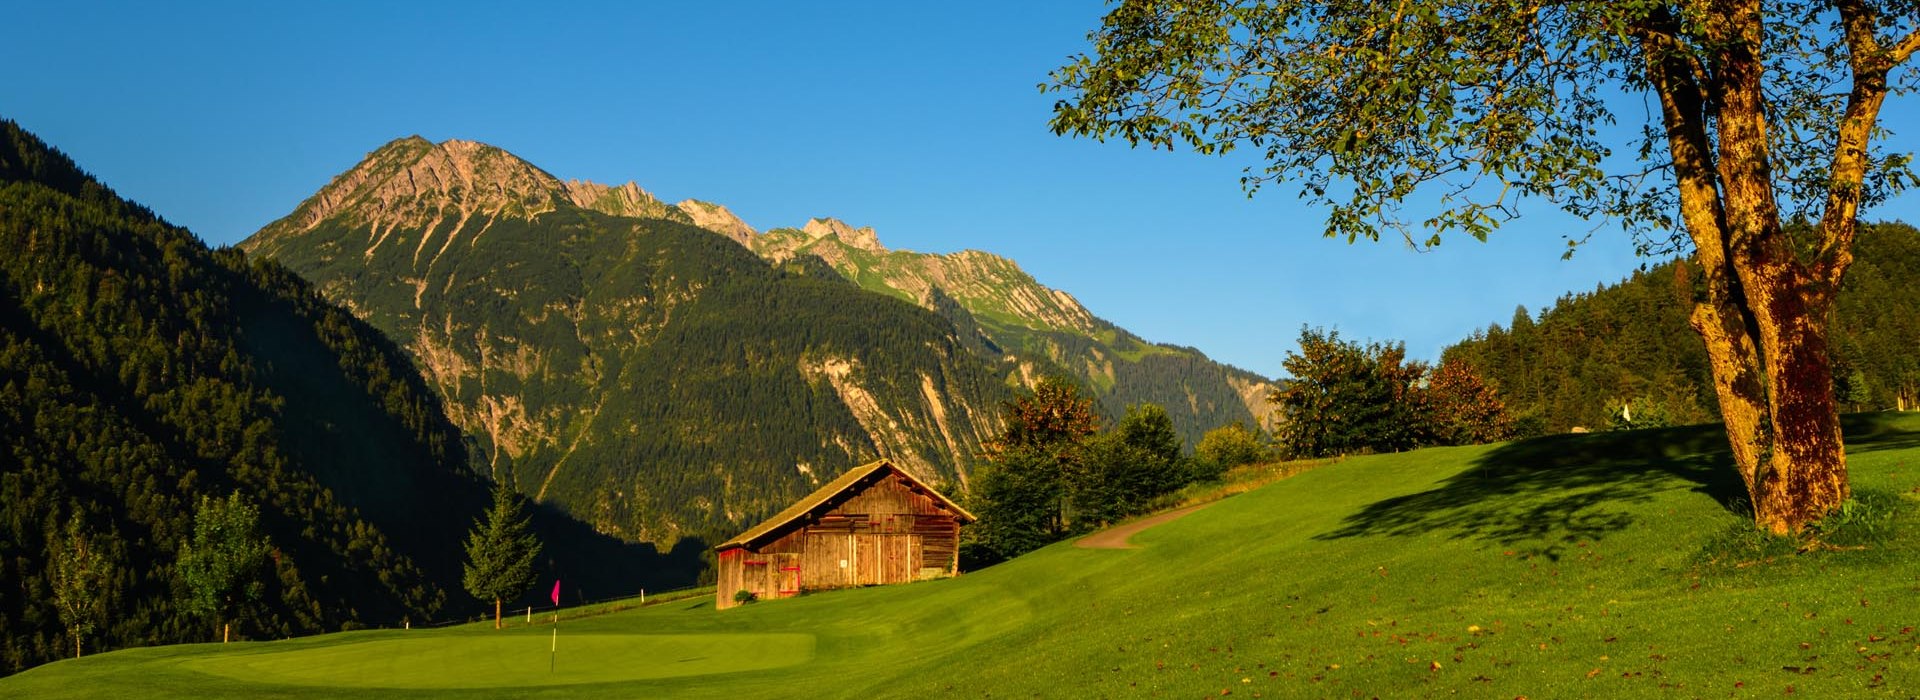 Golfclub Bludenz-Braz, Austria